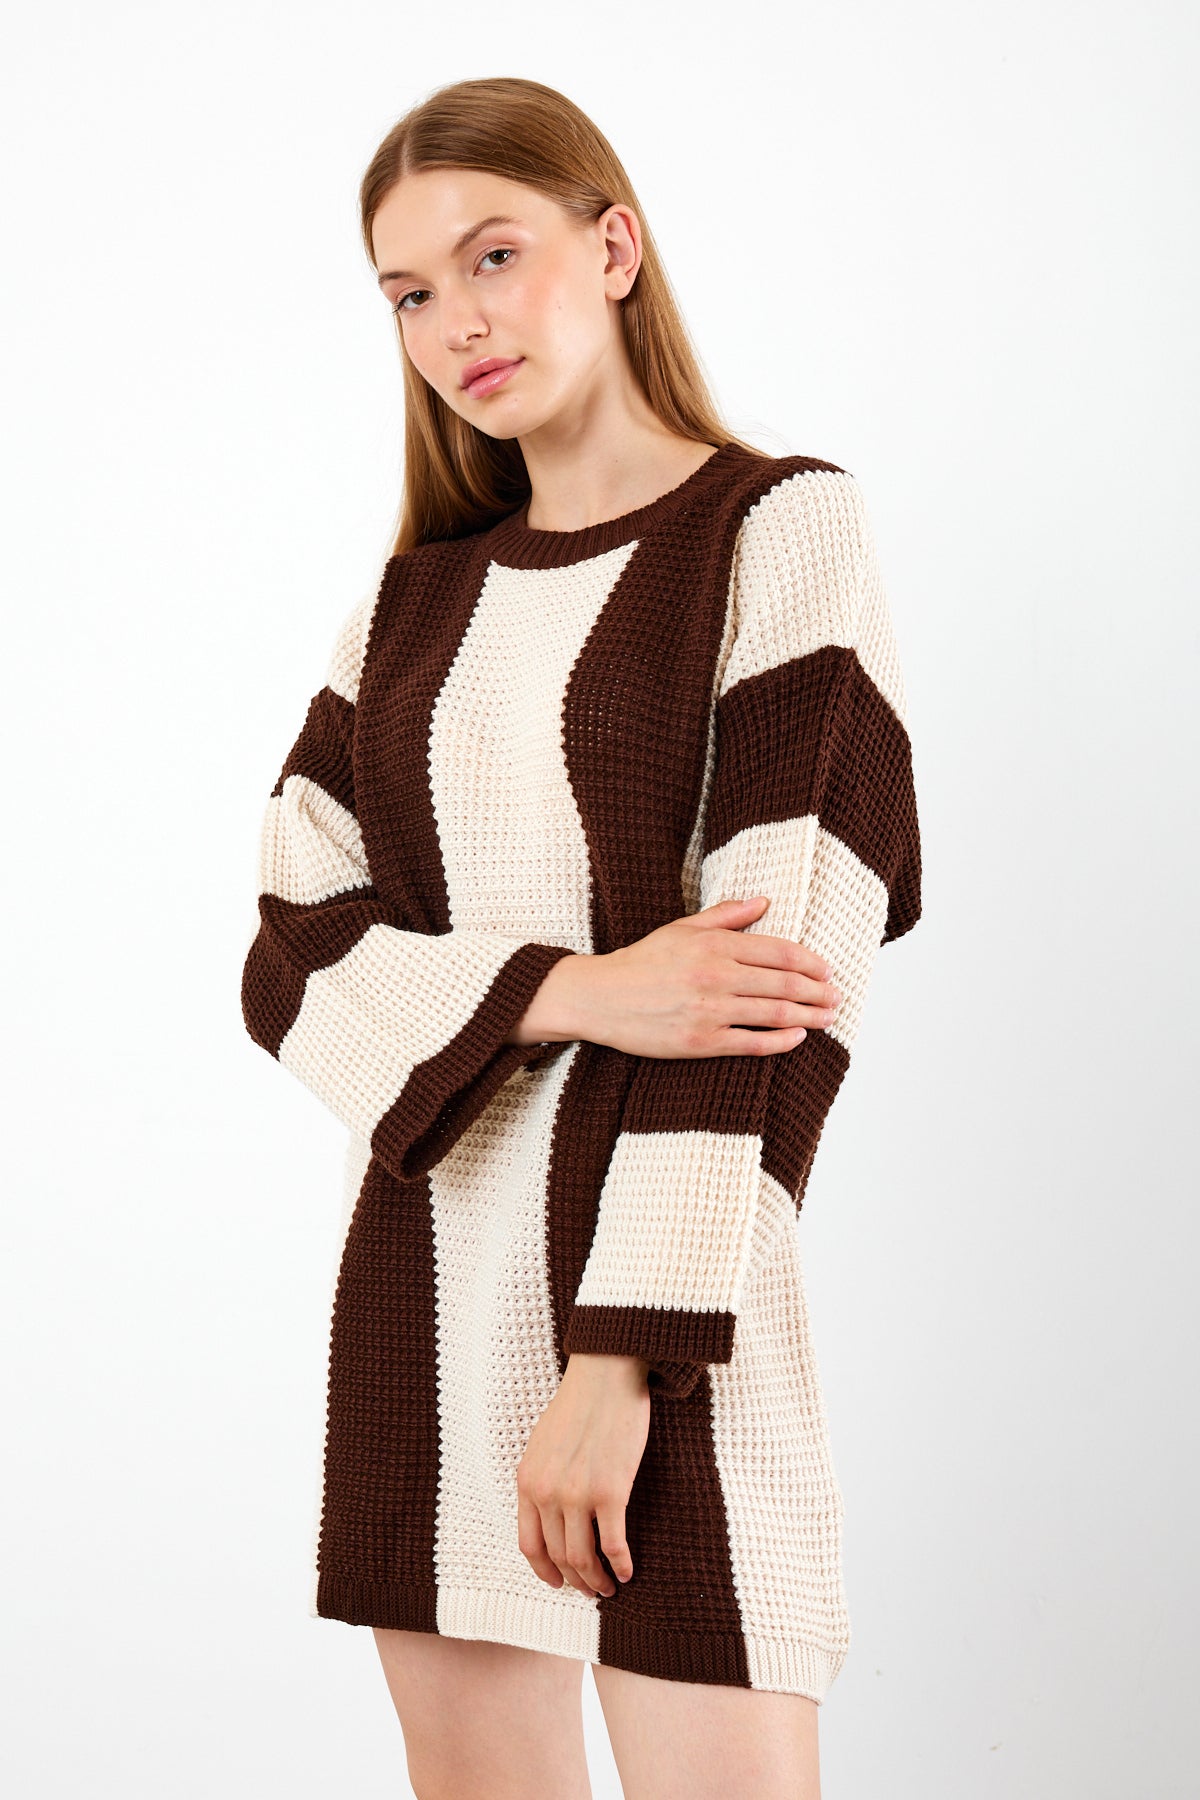 Knit Striped Mini Dress Knit Tunic Wide Striped- SKU: 3880